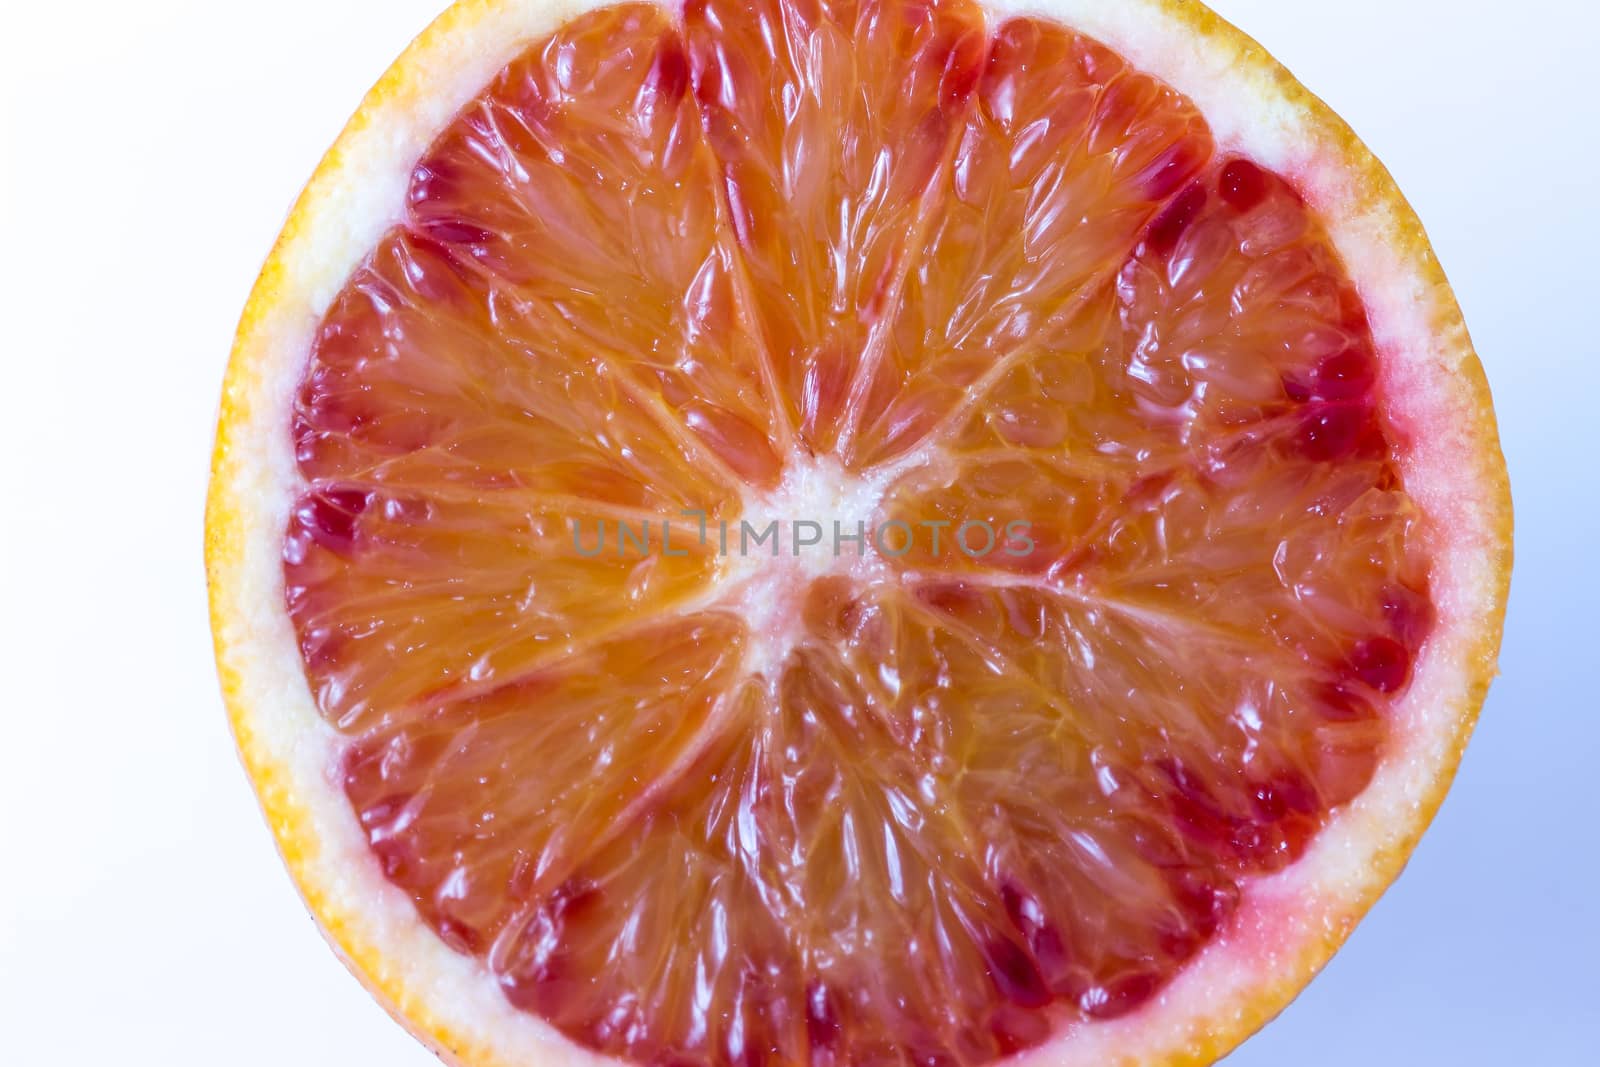 Orange slice by alanstix64